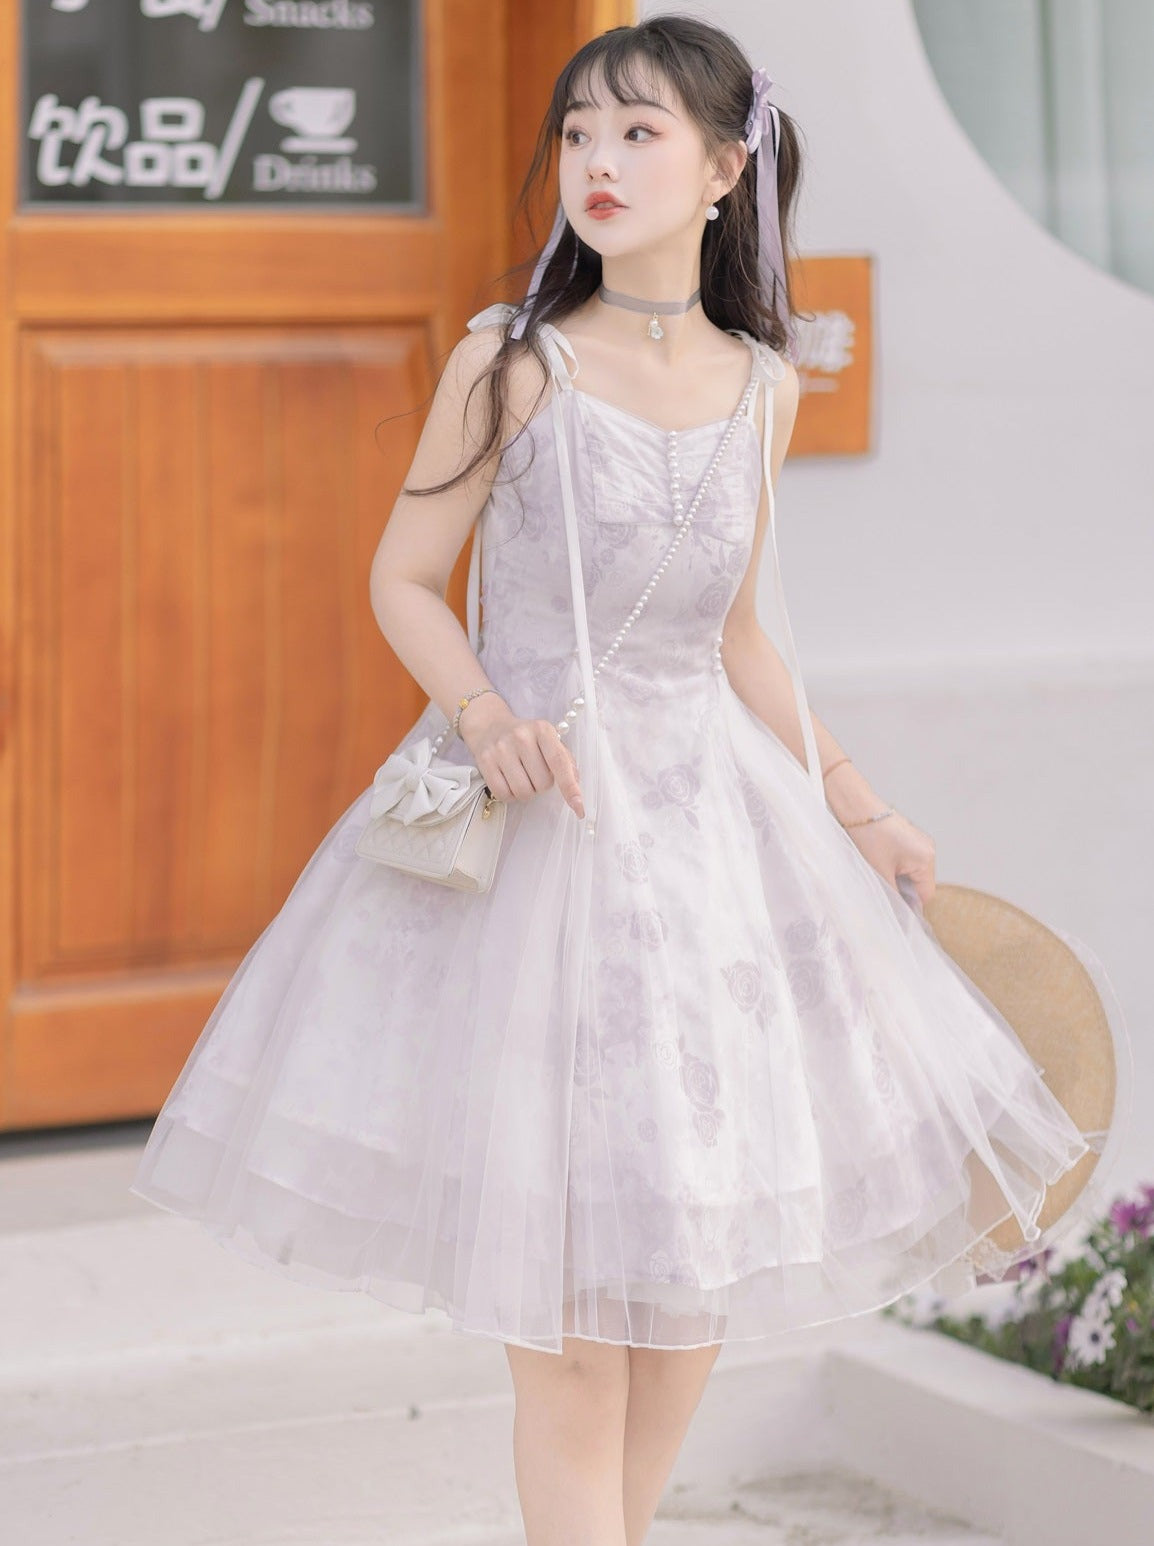 Original authentique Lolita élégante robe princesse fleur mariage quotidien douce Hanfu Han élément Lolita robe été